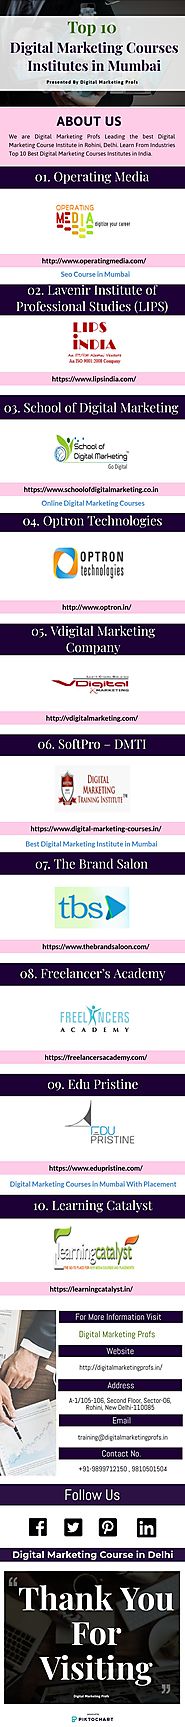 Best Digital Marketing Institute in Mumbai - Infographic